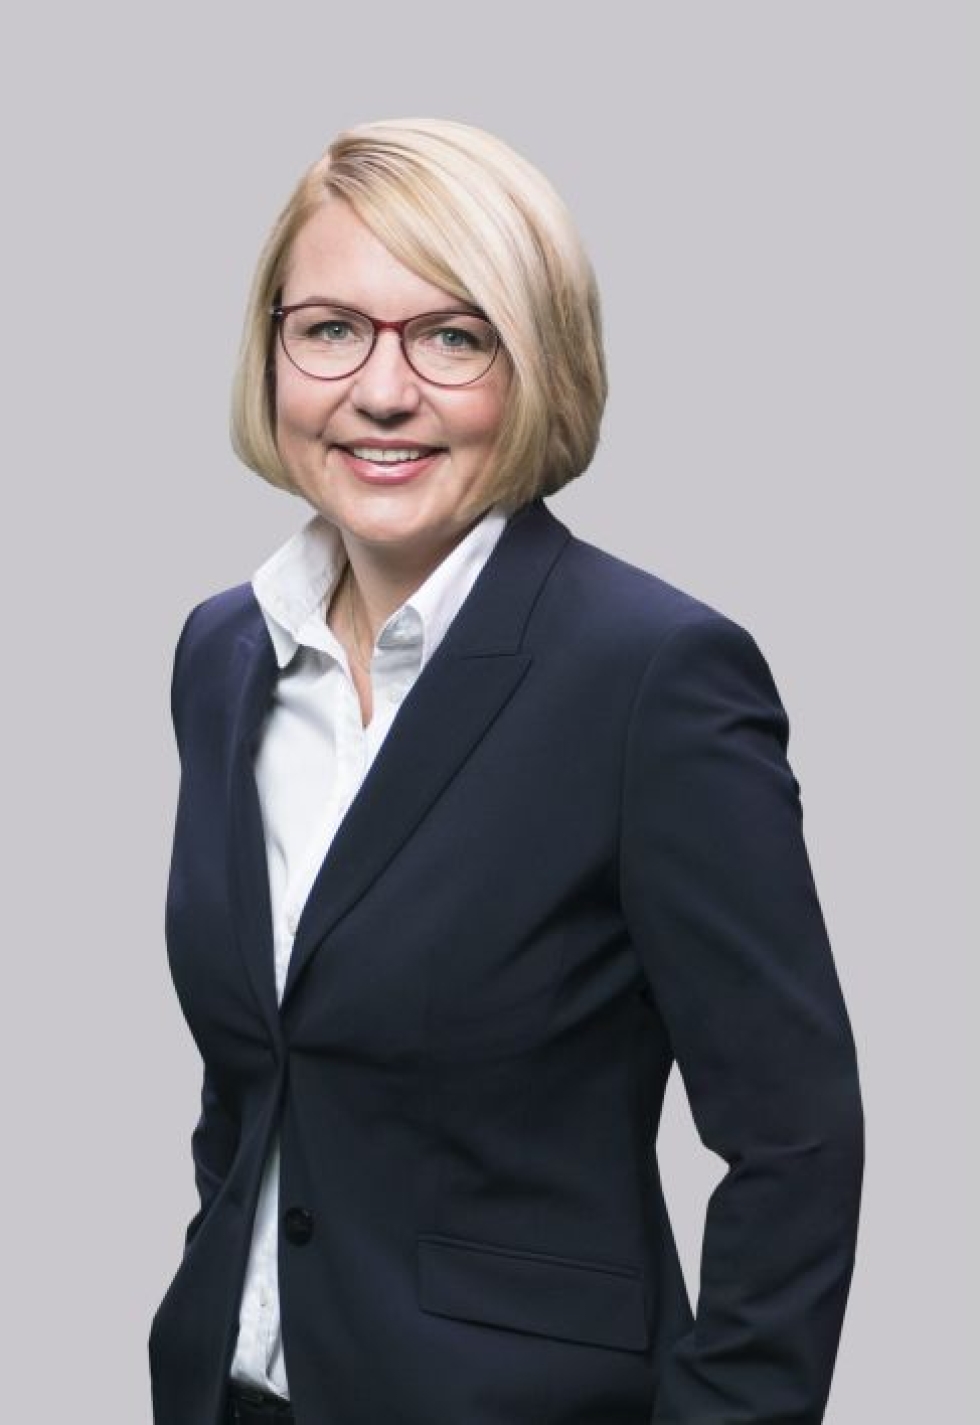 Nathalie Ahlström. LEHTIKUVA / HANDOUT / ROB ORTHEN